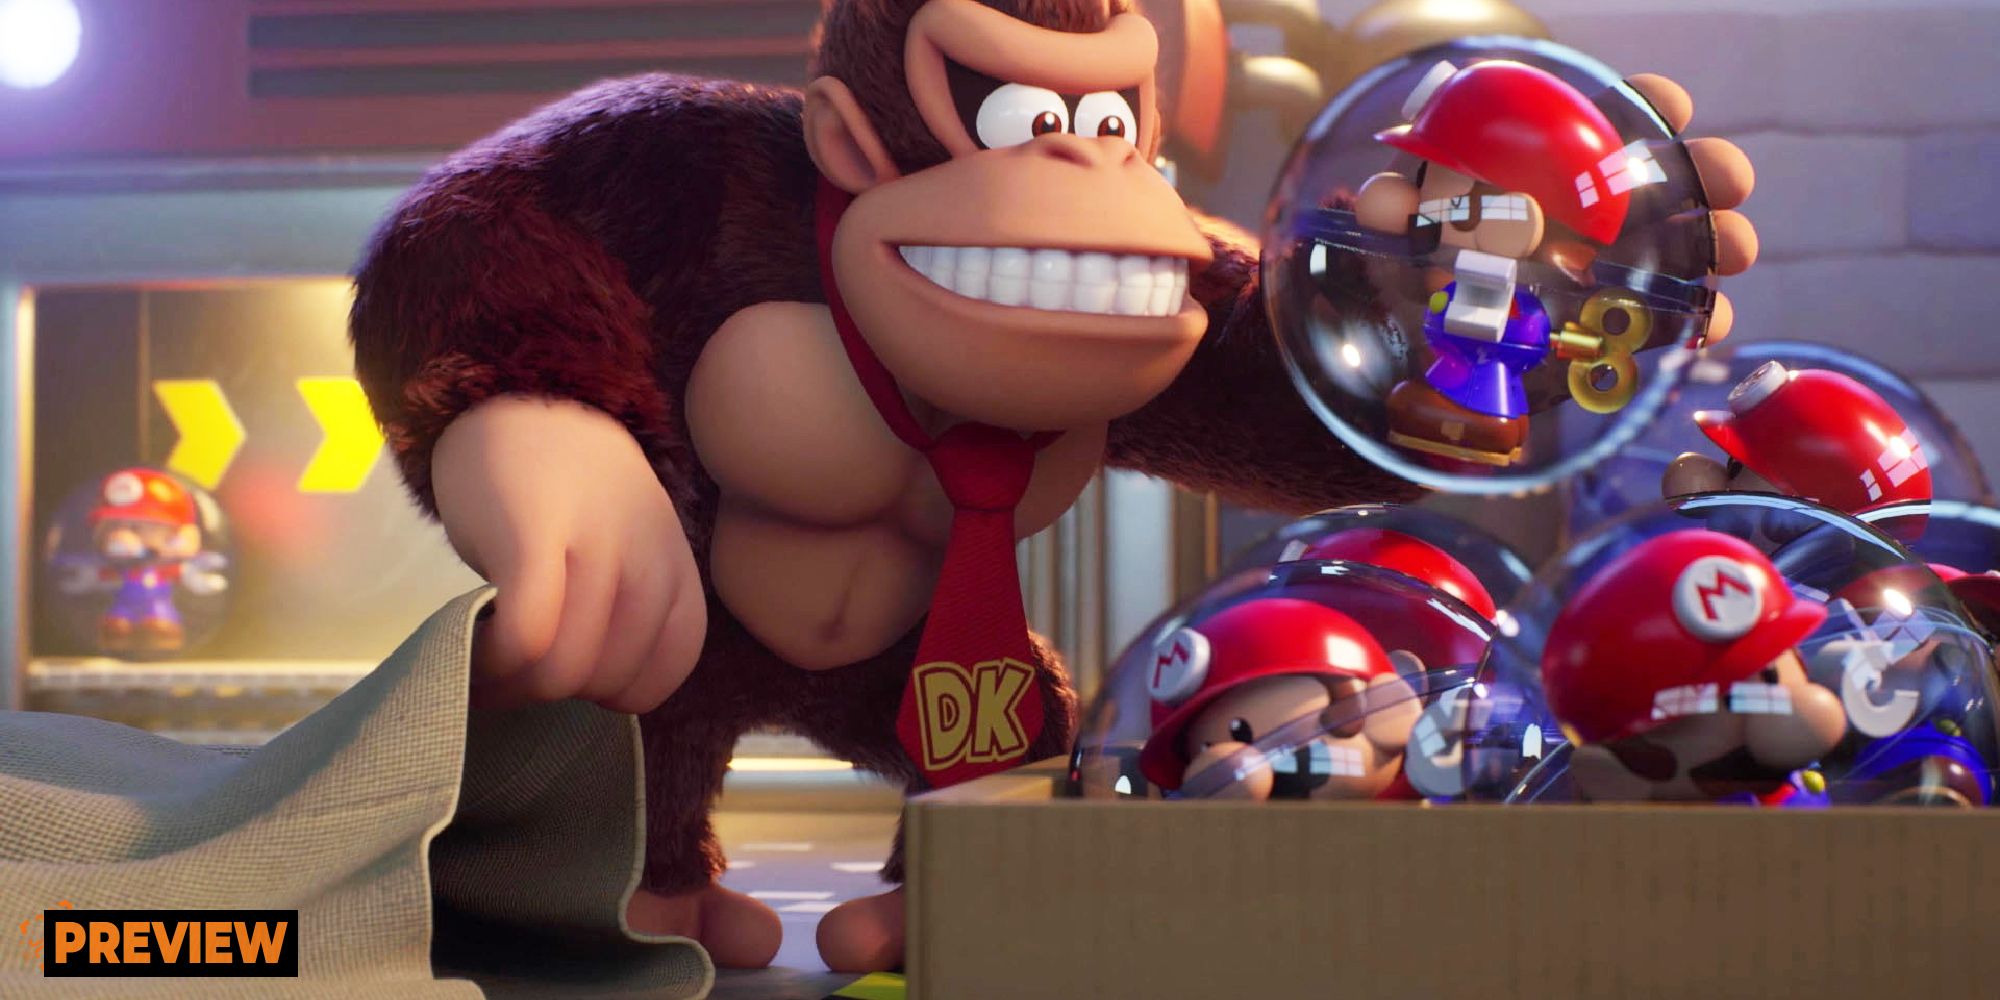 Vorschaukarte „Mario vs. Donkey Kong“ mit Donkey Kong, der ein Mario-Spielzeug hält